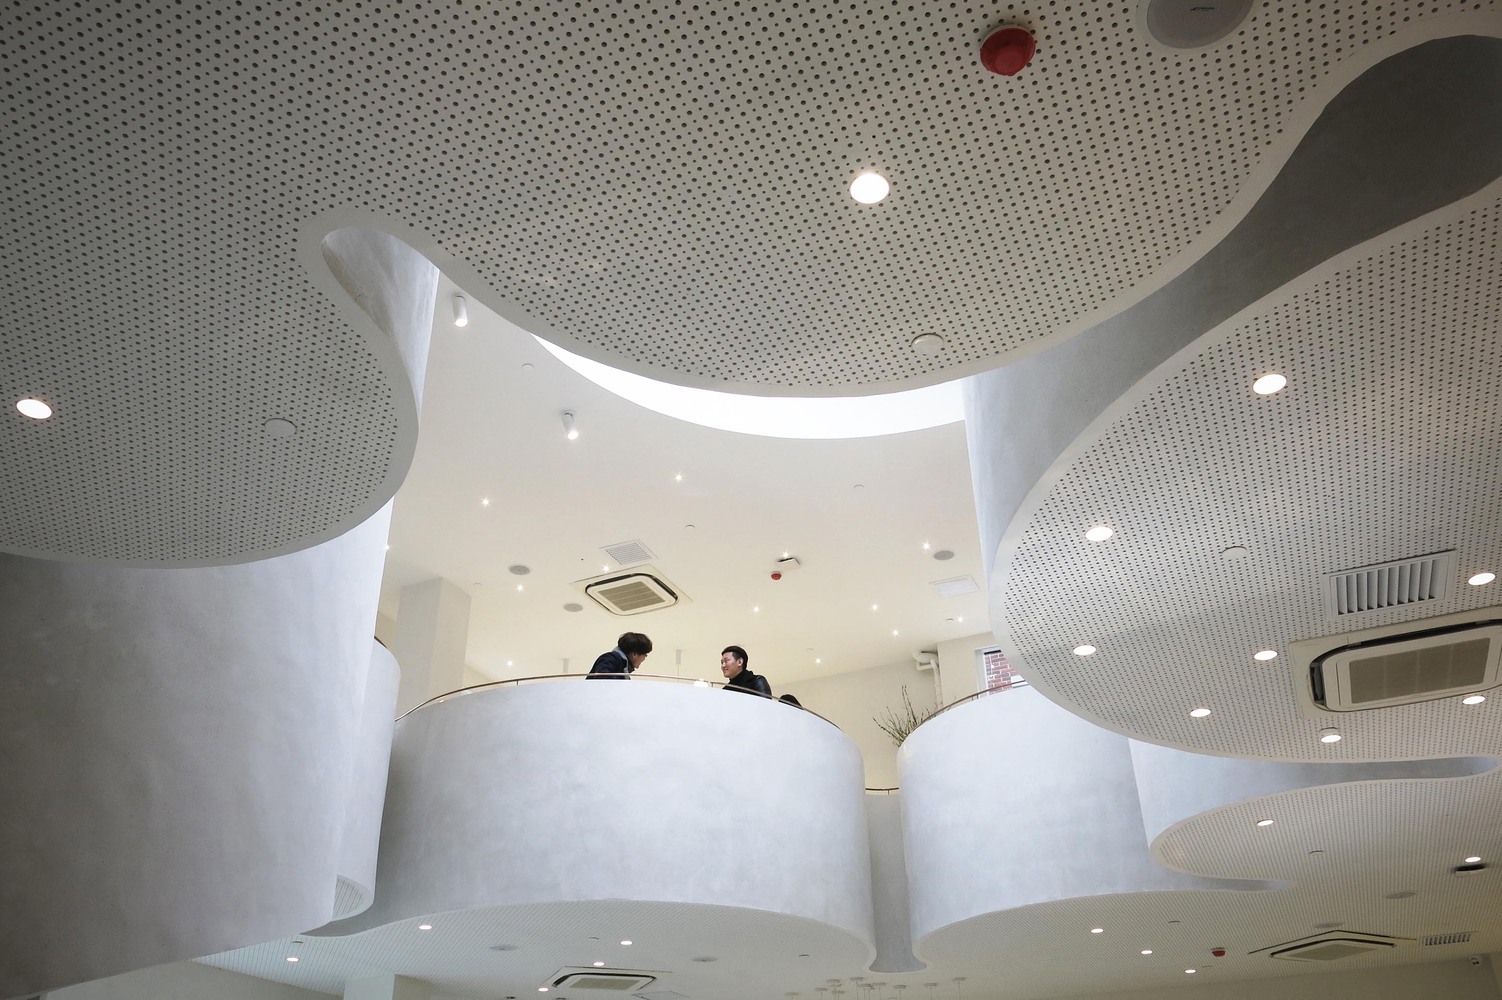 طراحی داخلی کافه ای متفاوت در چین